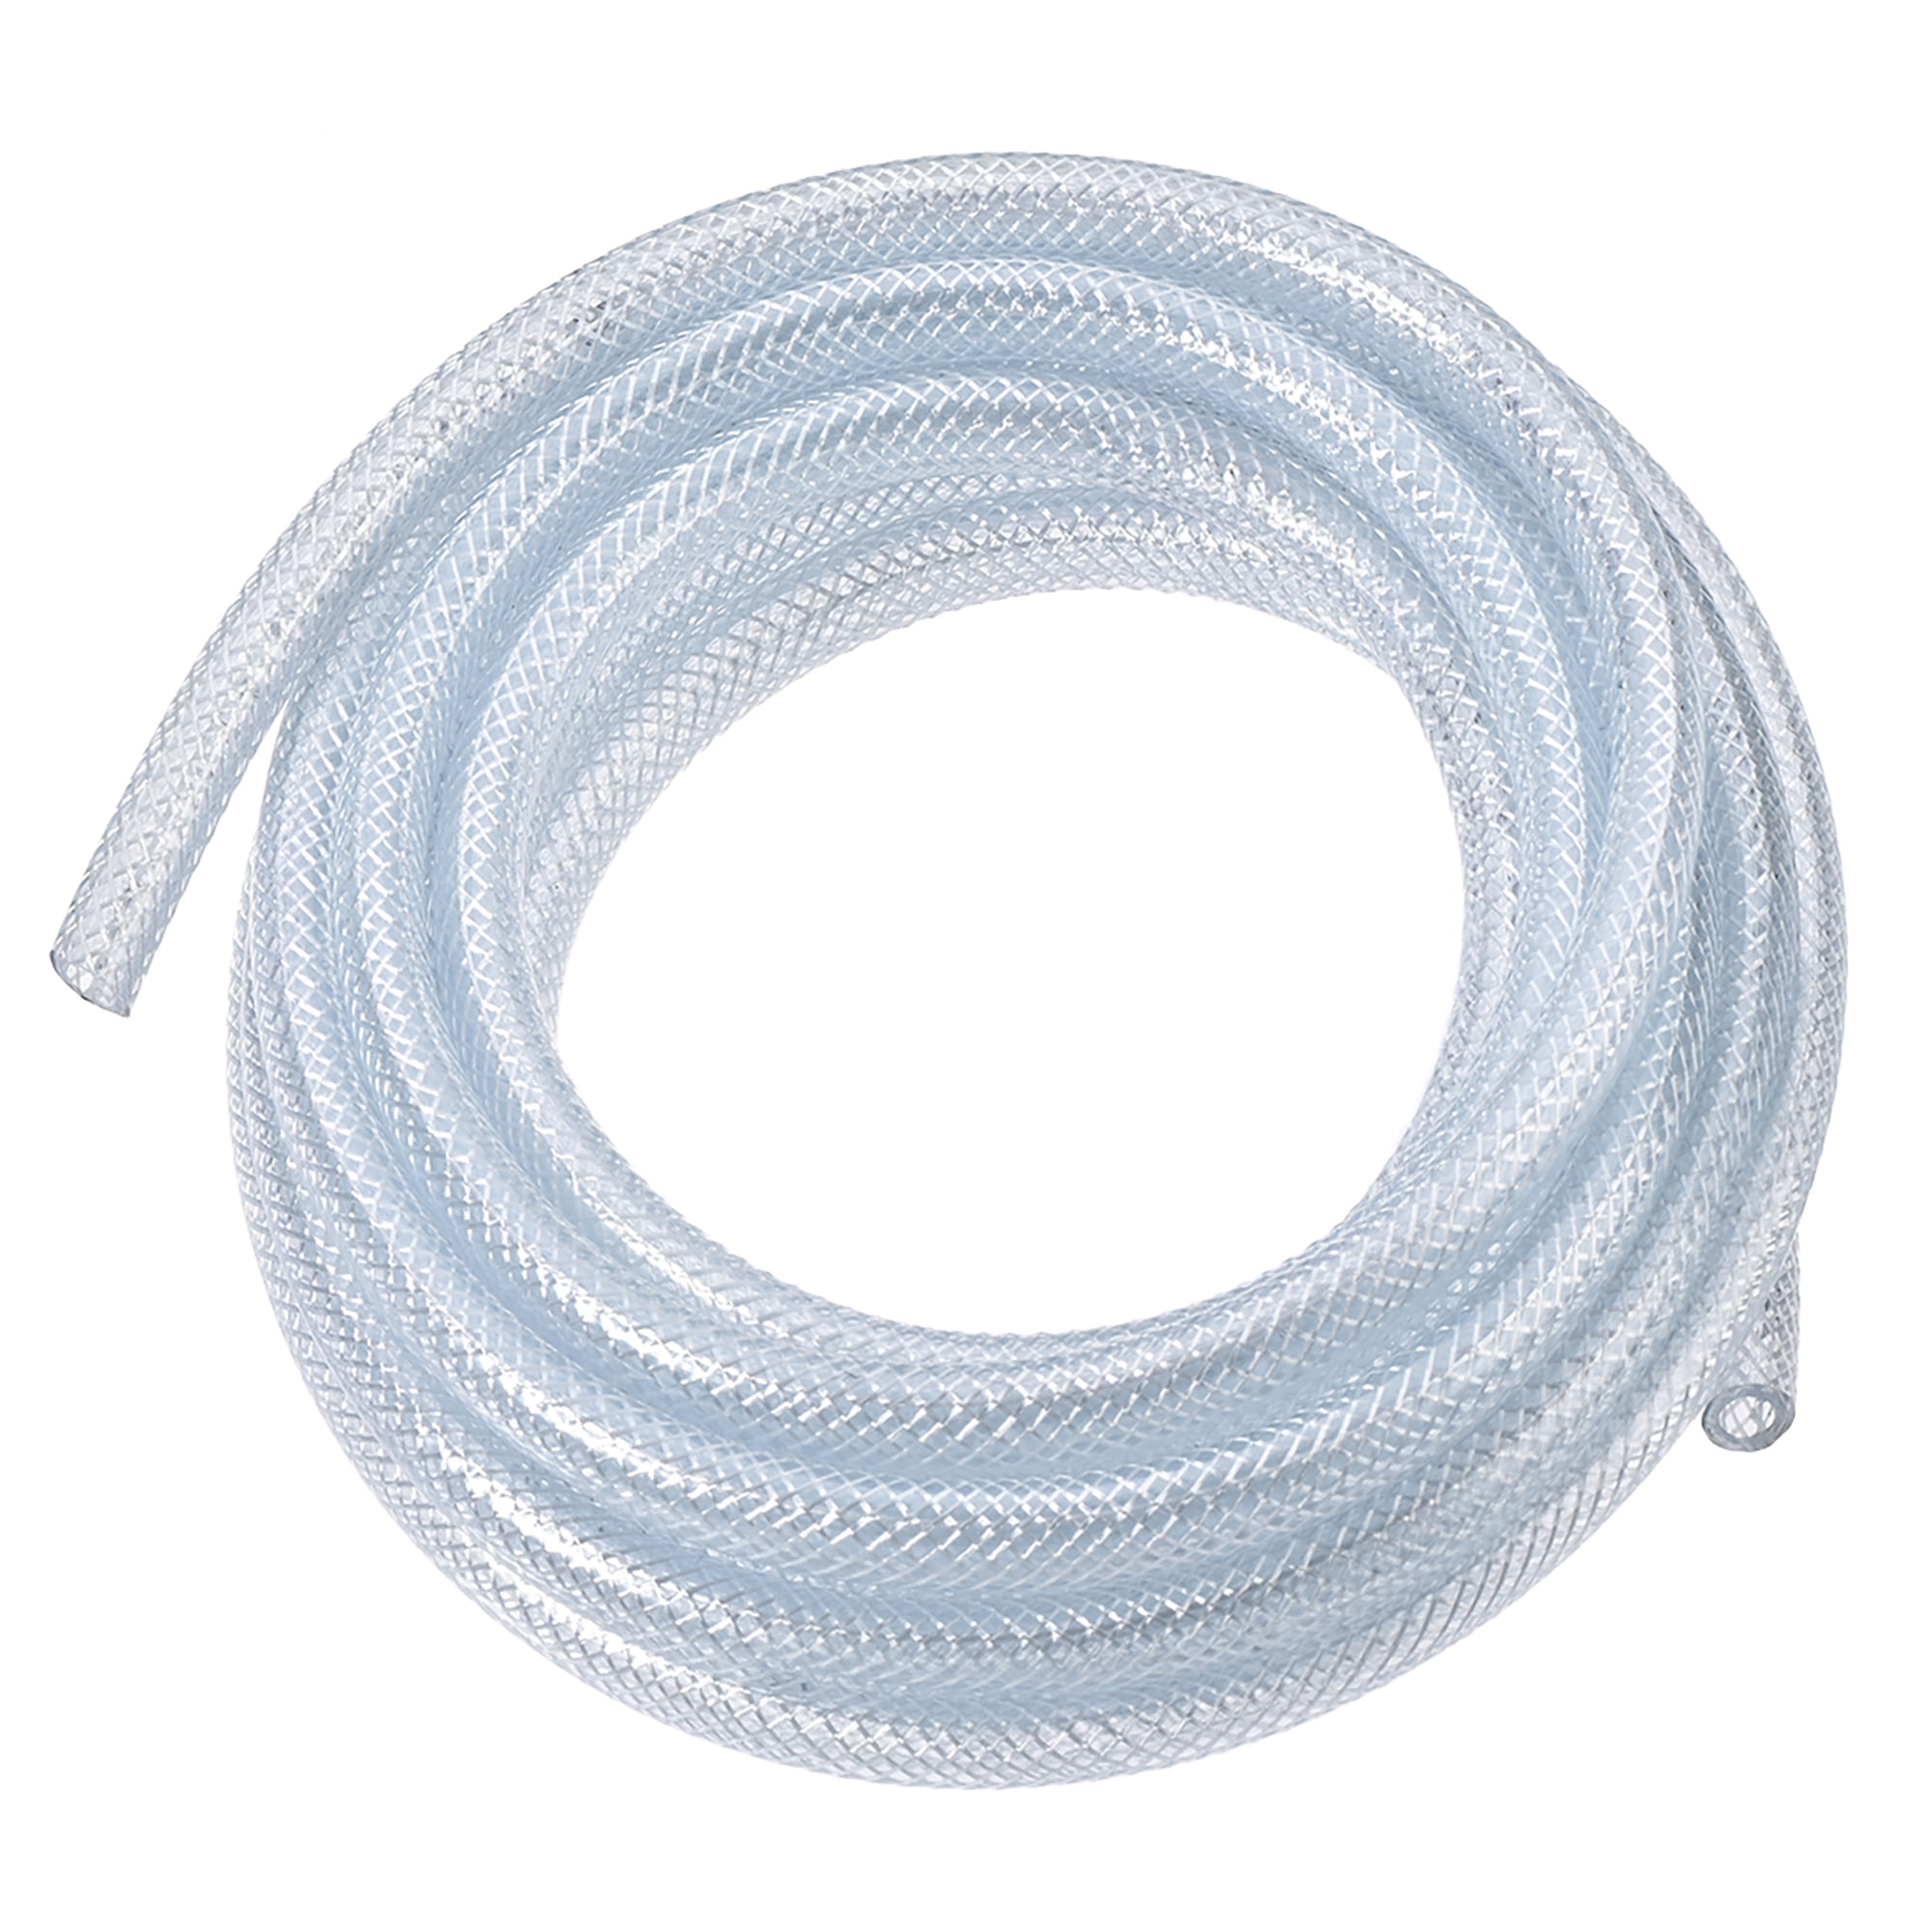 PVC Tubing 1/4-Inch x 13.1 Ft Clear Braided Flexible Heavy-Duty Hose 1 4 Inch Clear Plastic Tubing